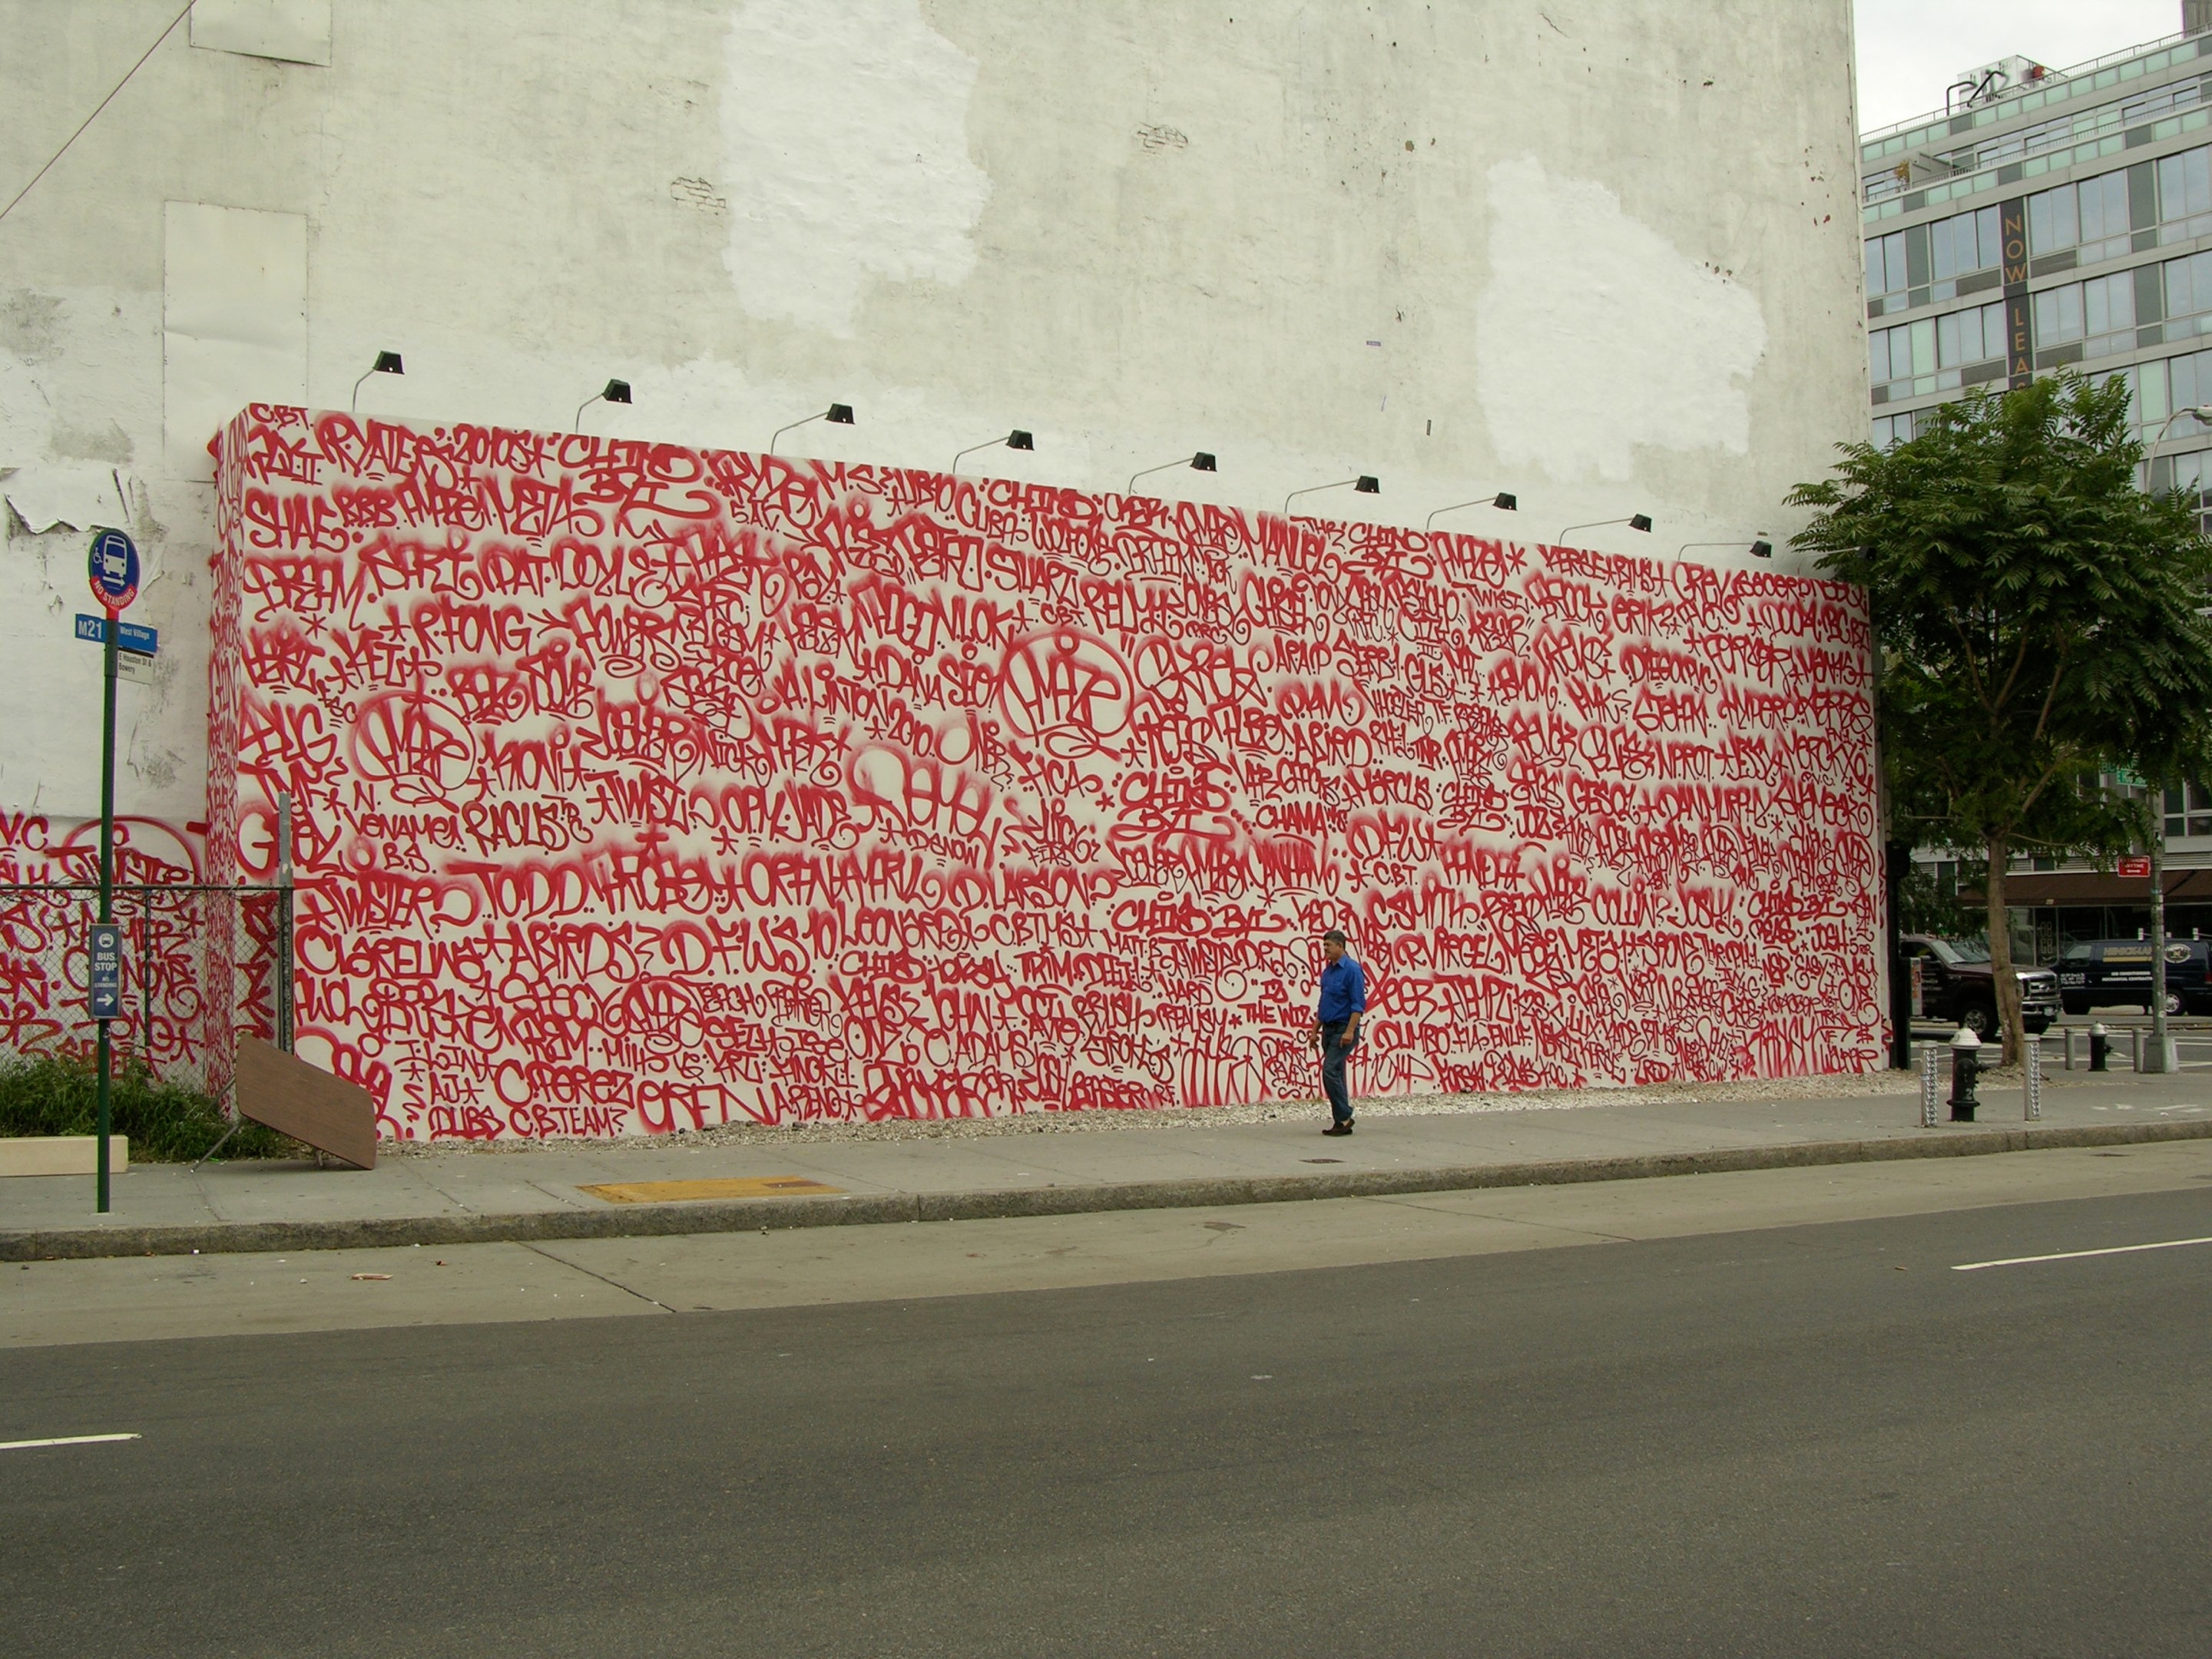 auteur Barry McGee de la citation Pour moi, le graffiti signifie faire des marques sur les surfaces en utilisant à peu près n'importe quoi, que ce soit des marqueurs, des pulvérisations, de la peinture, de la craie, du rouge à lèvres, du vernis, de l'encre. Ou cela peut être le résultat de rayures et d'incisions. L'objectif est de maintenir l'énergie créée par la perturbation ou l'excitation dans la rue.